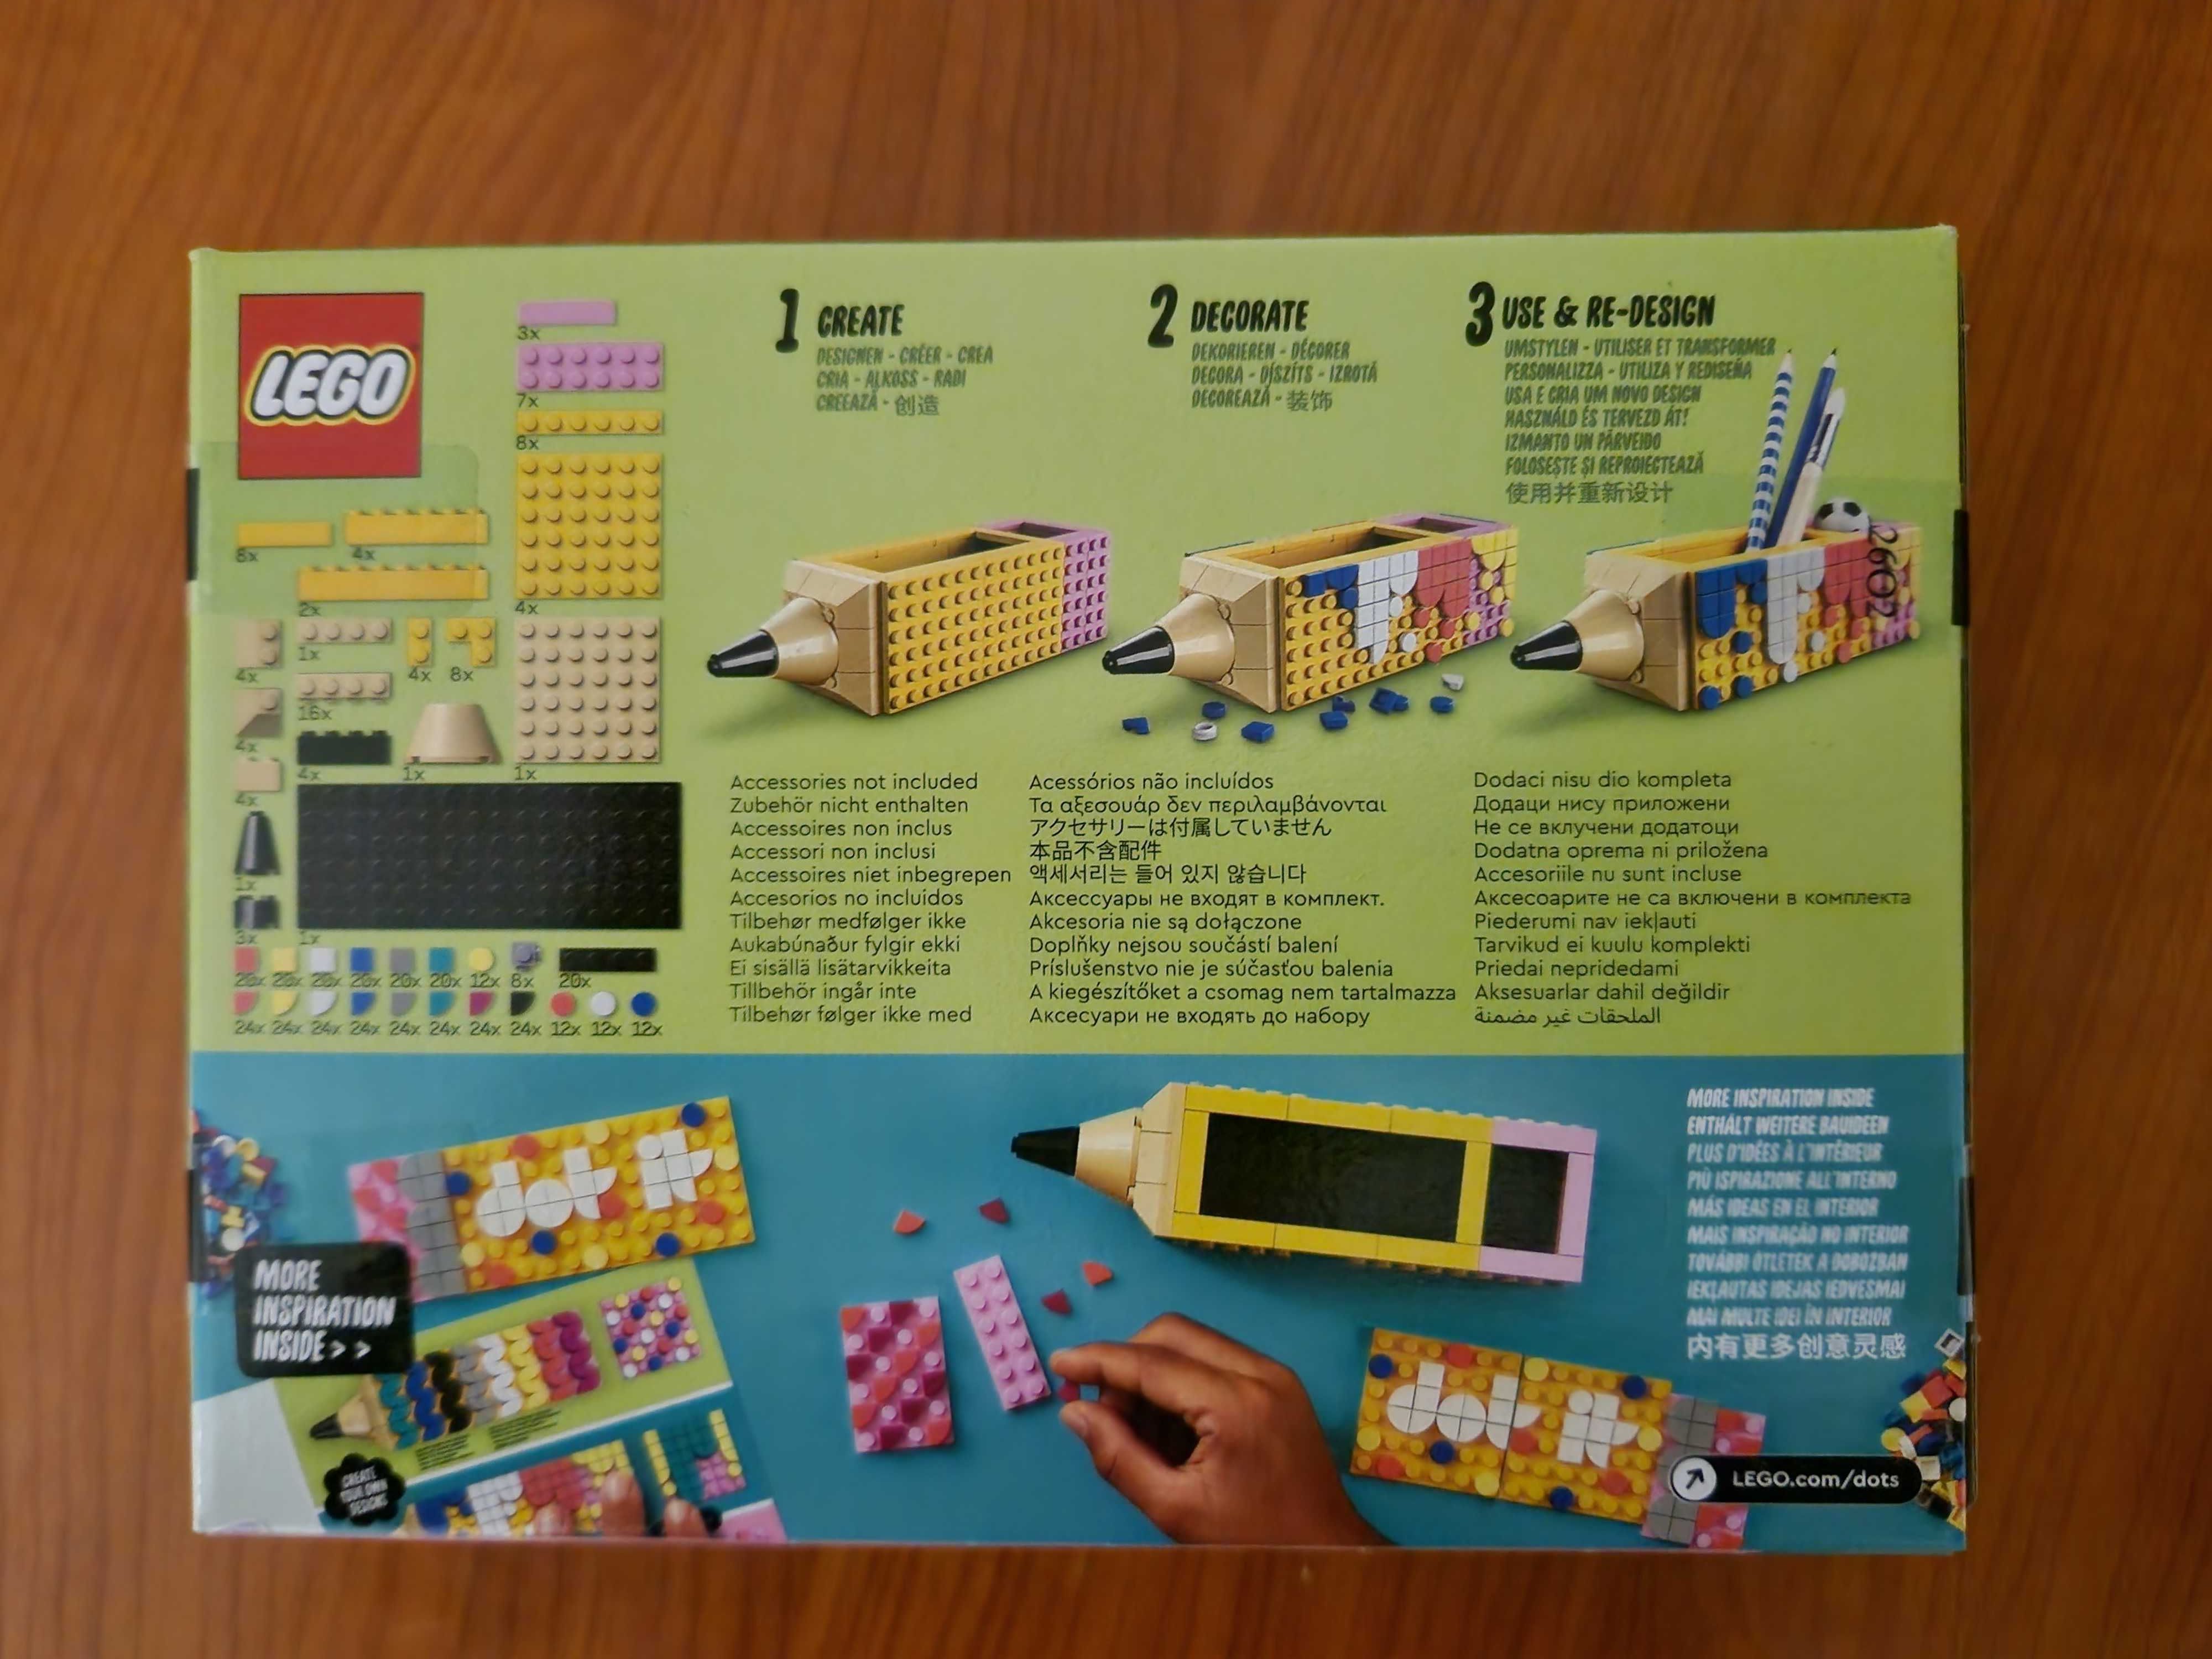 LEGO 40561 DOTS - Pojemnik na długopisy